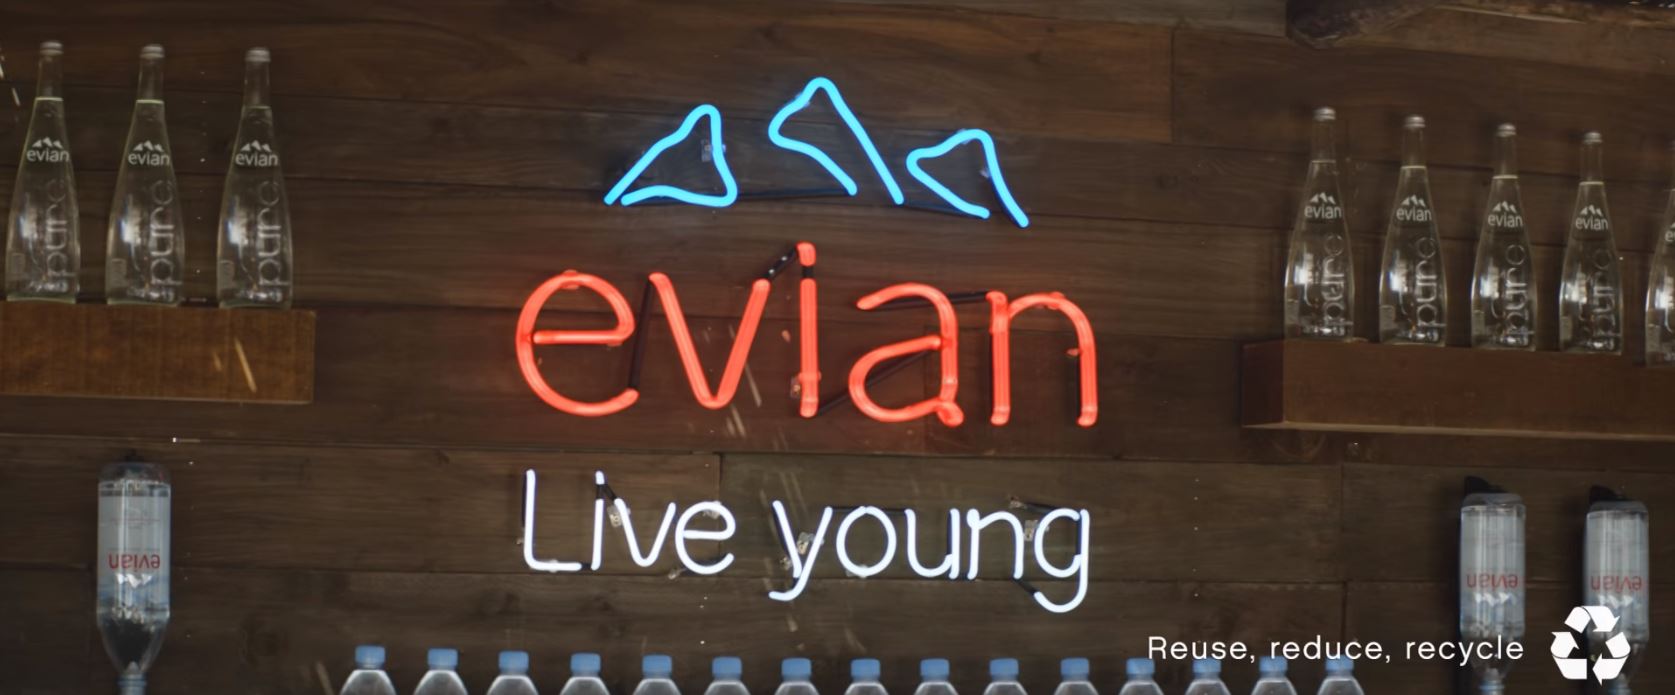 evian-live-young-publicite